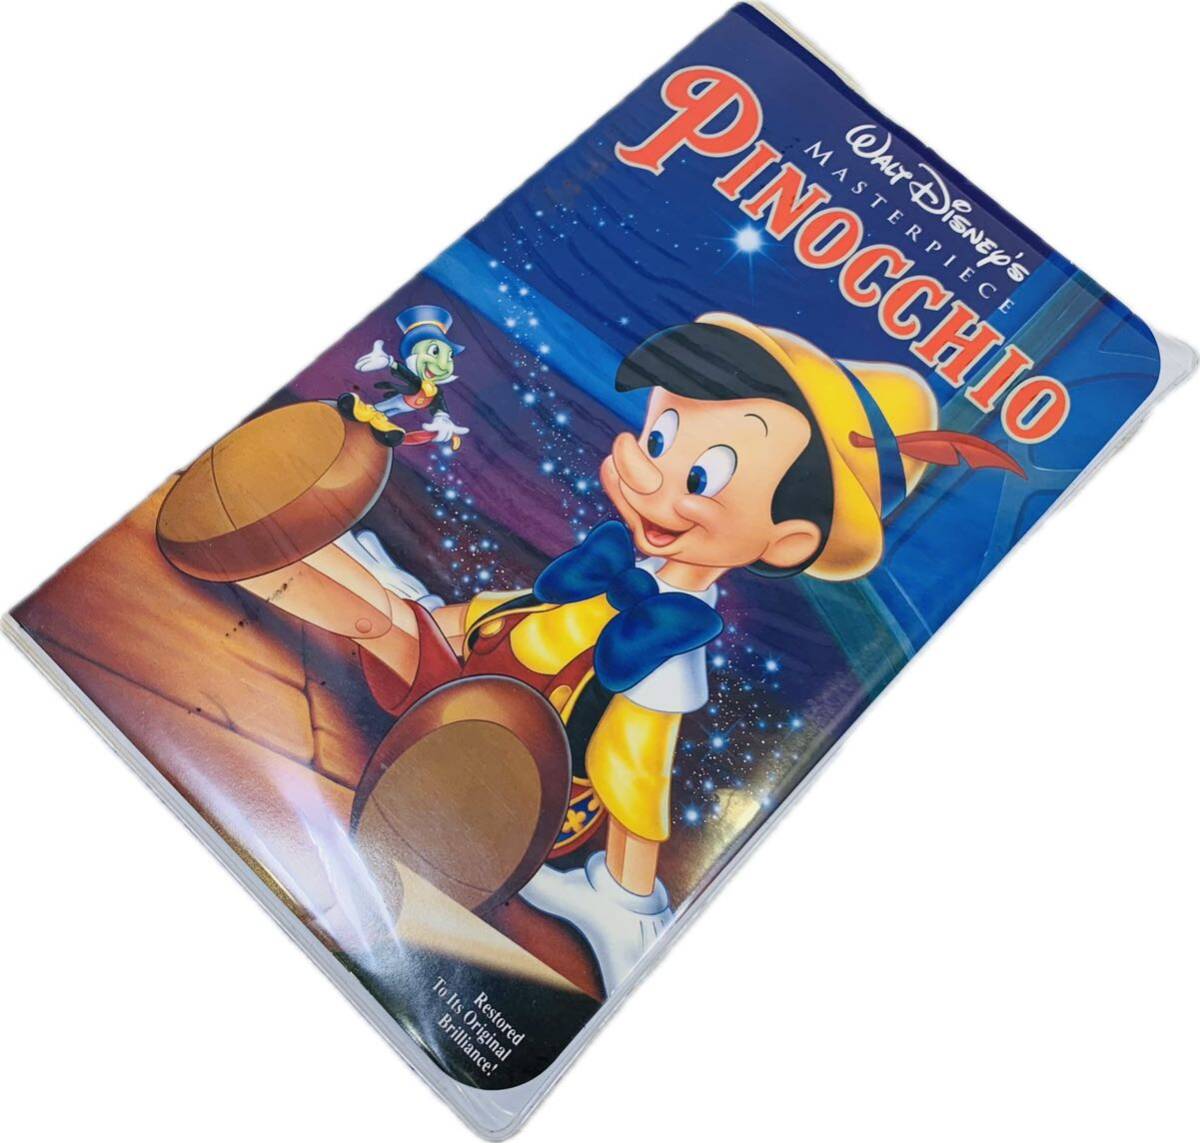 woruto* Disney Disney PINOCCHIO Pinocchio видео VHS японский язык дуть . изменение версия аниме фильм VHS видеолента кассетная лента видео 